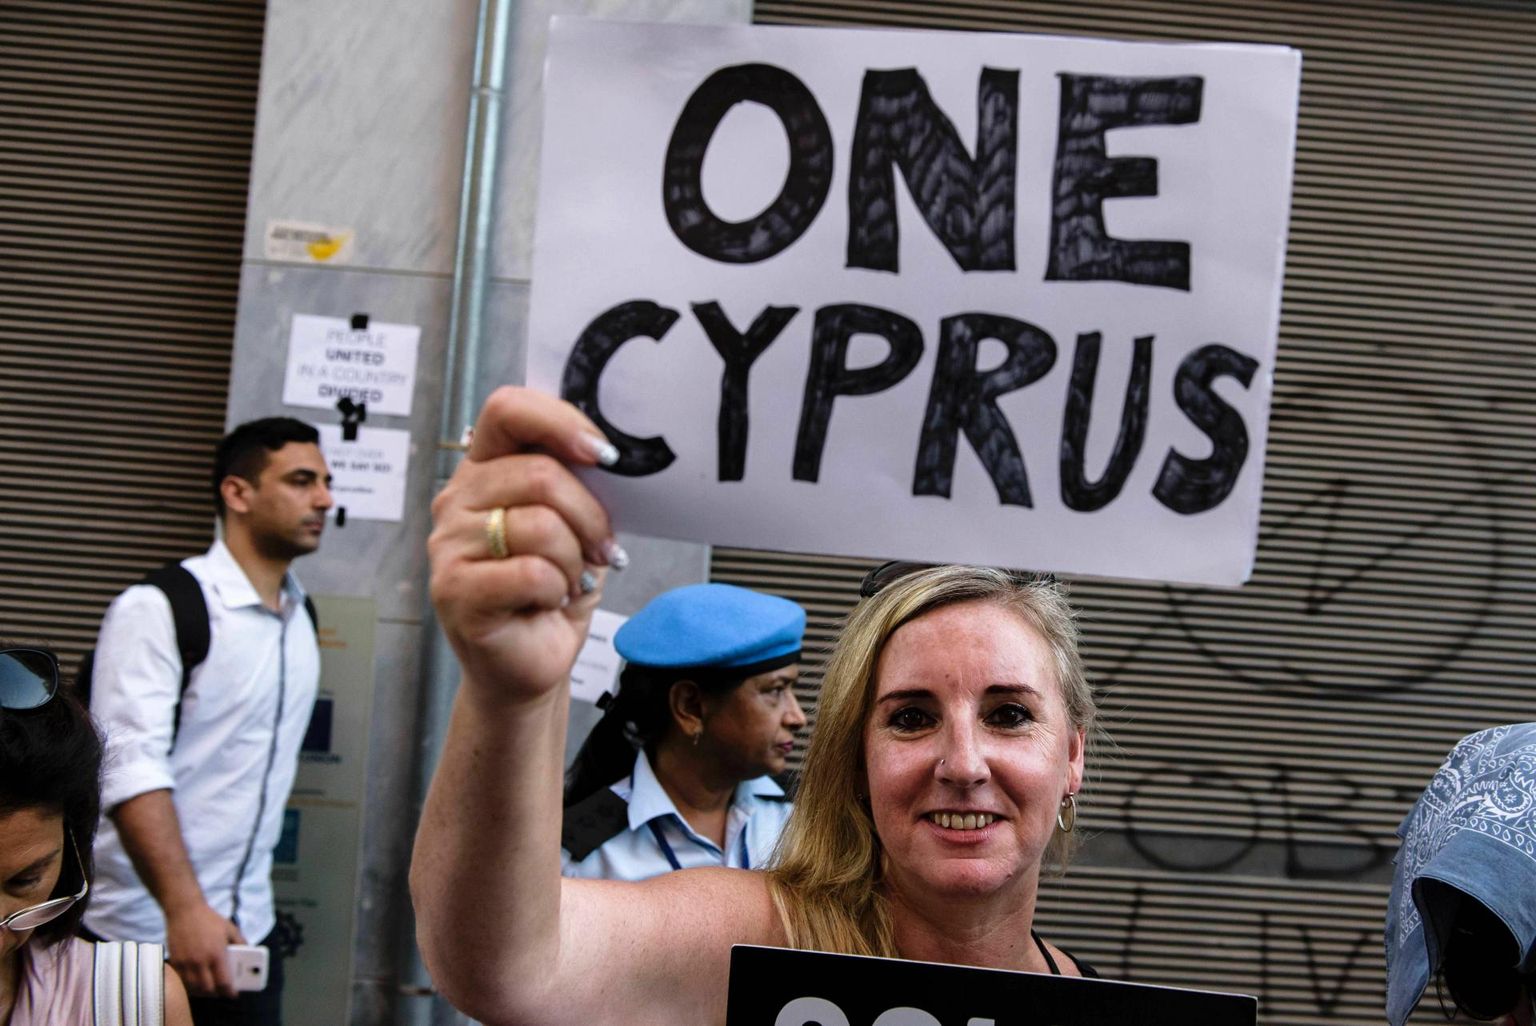 2017. aastal toimunud meeleavaldus, kus nii türgi- kui kreekaküproslased nõudsid saare taasühendamist. 